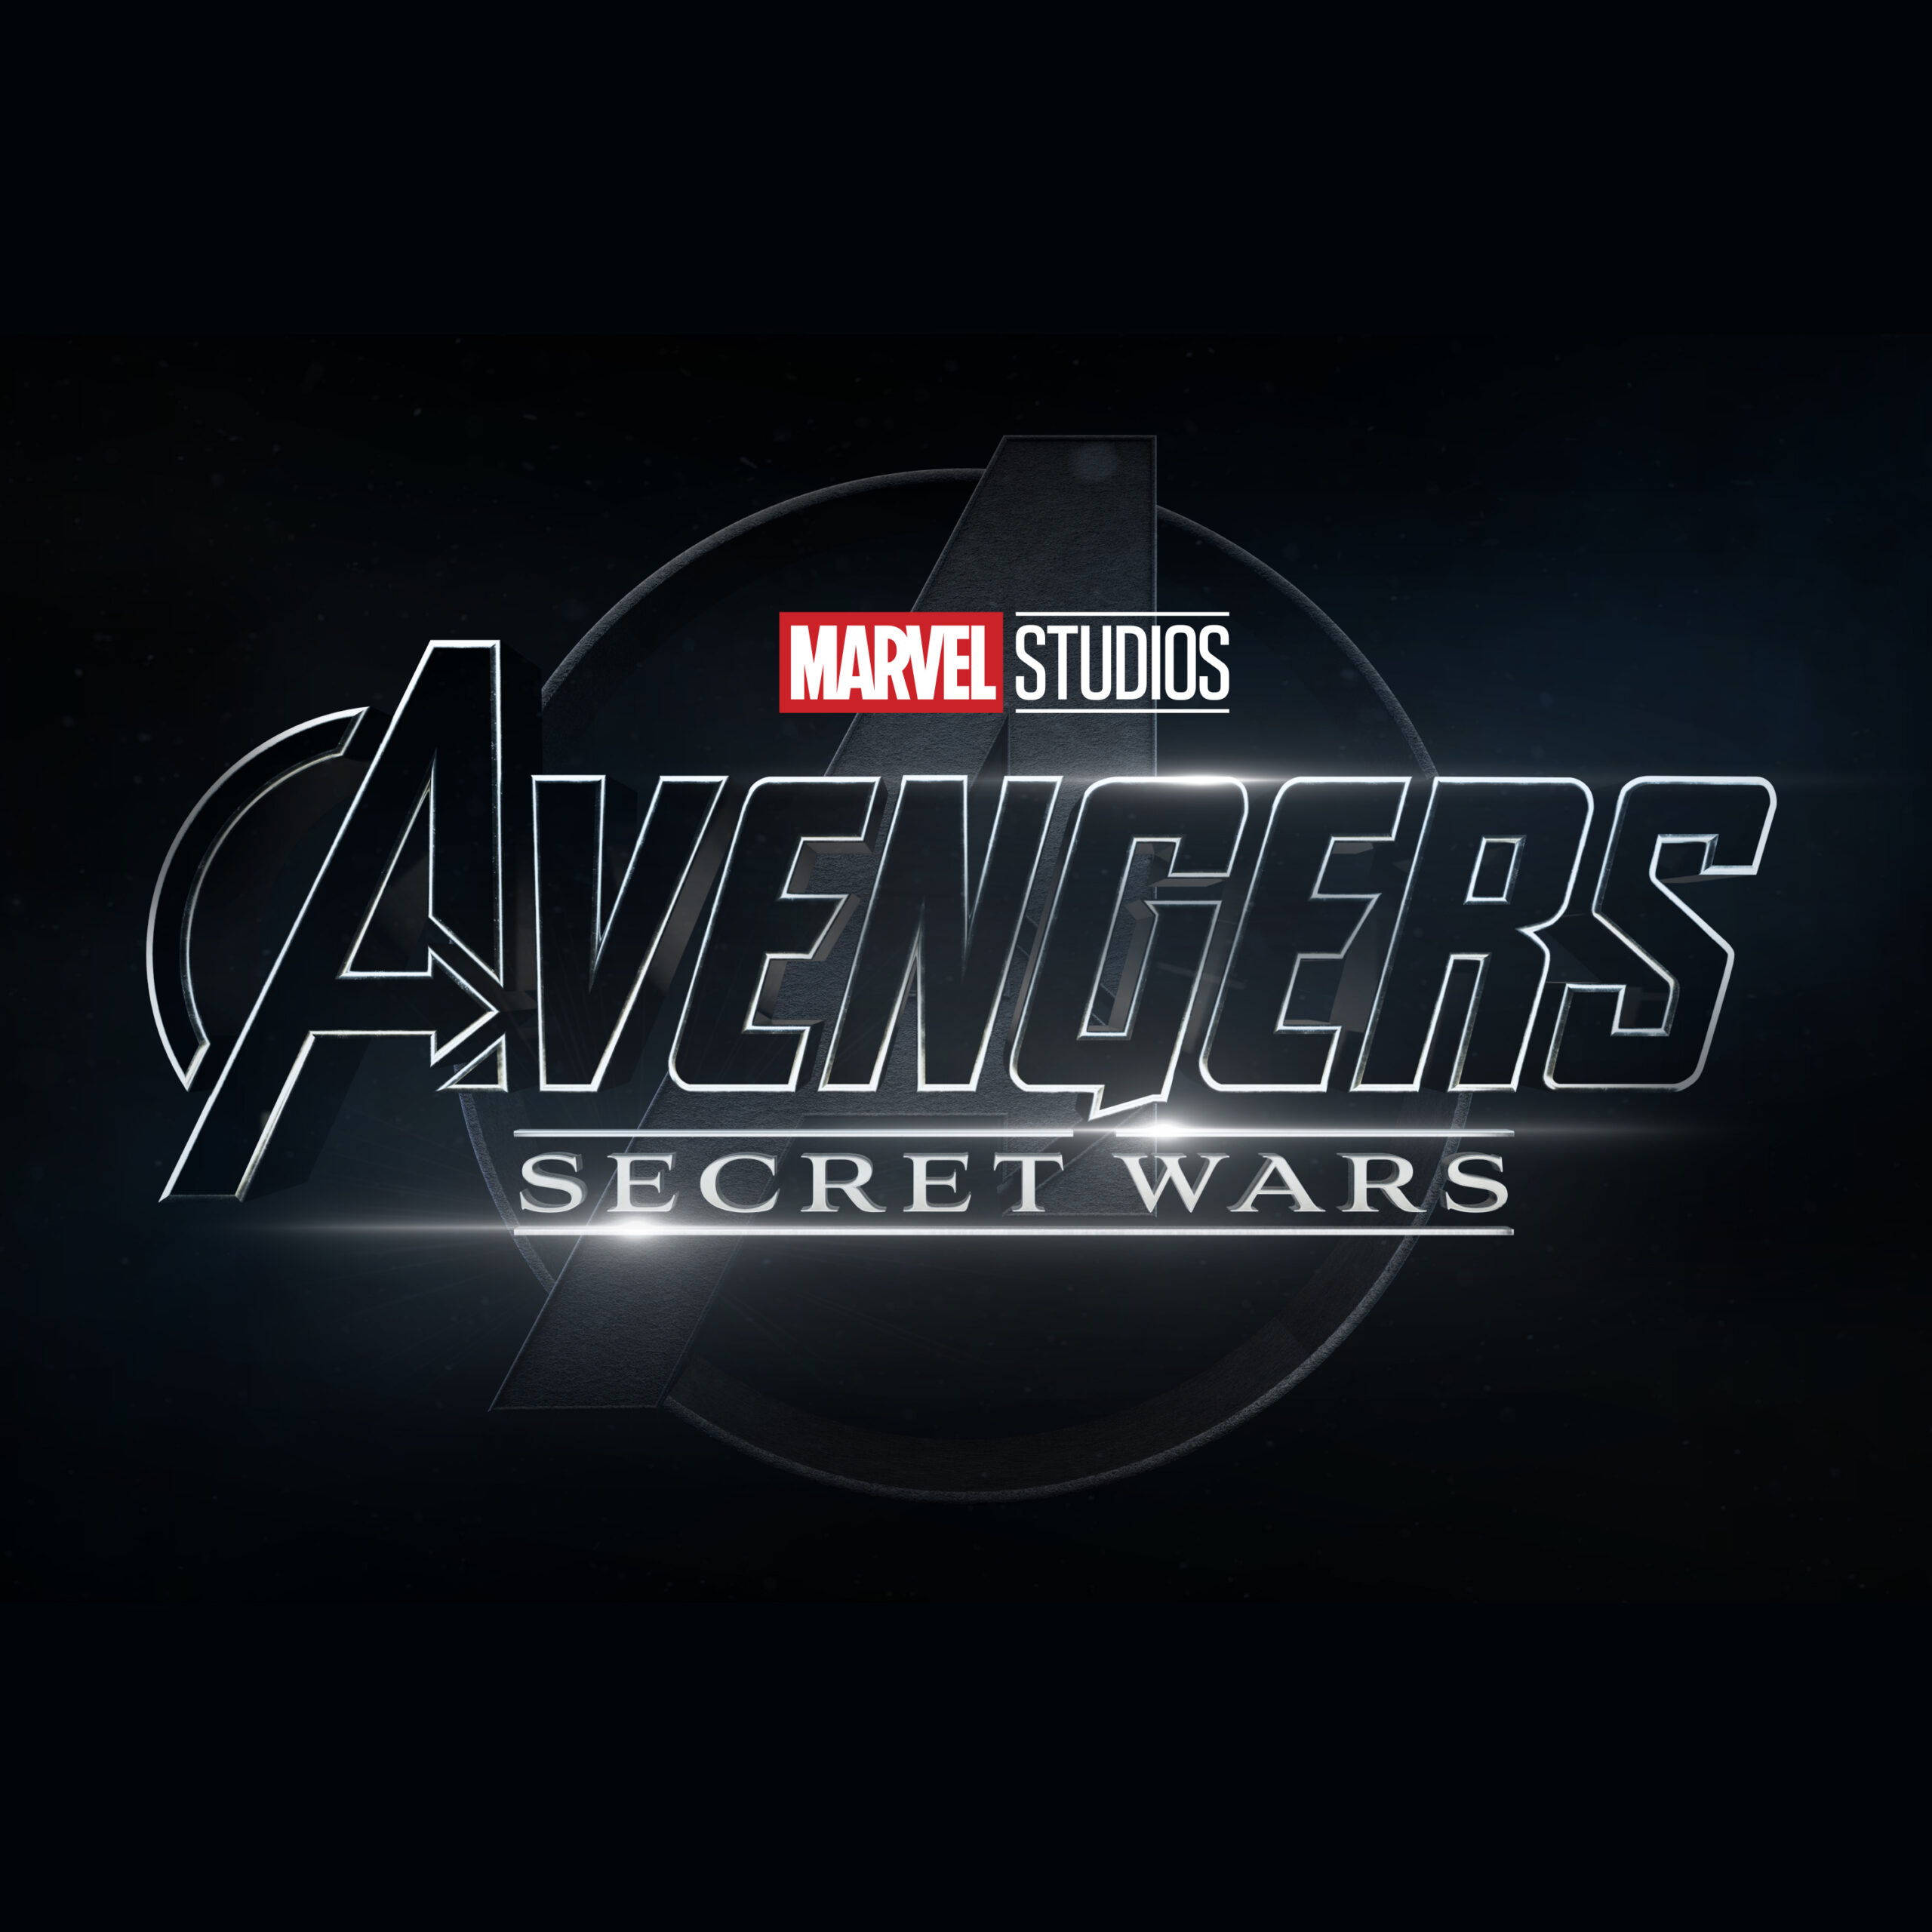 Marvel x Disney, AVENGERS SECRET WARS